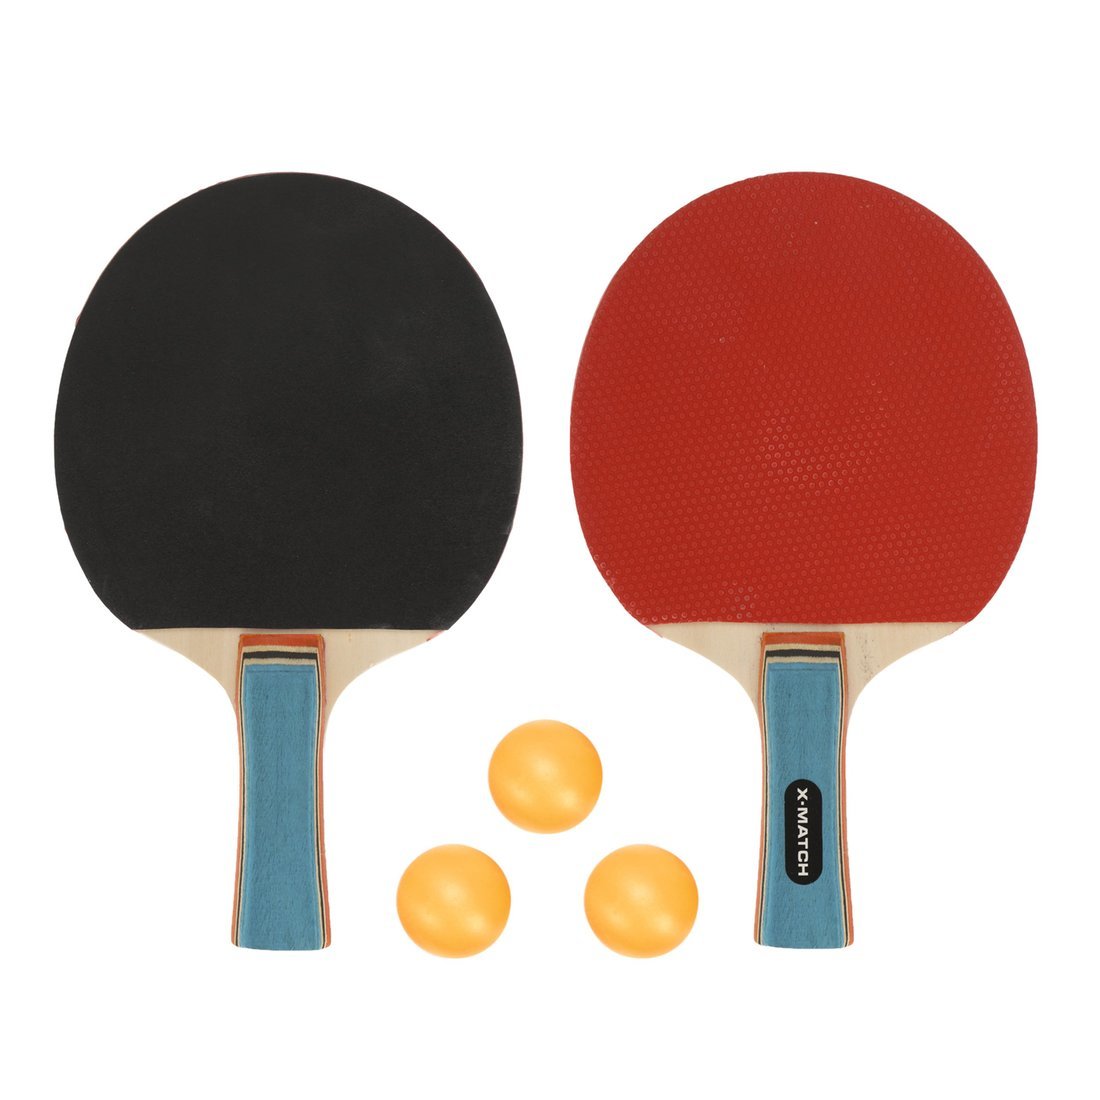 Игровой набор X-Match для настольного тенниса, 2 ракетки, 3 шарика 636270